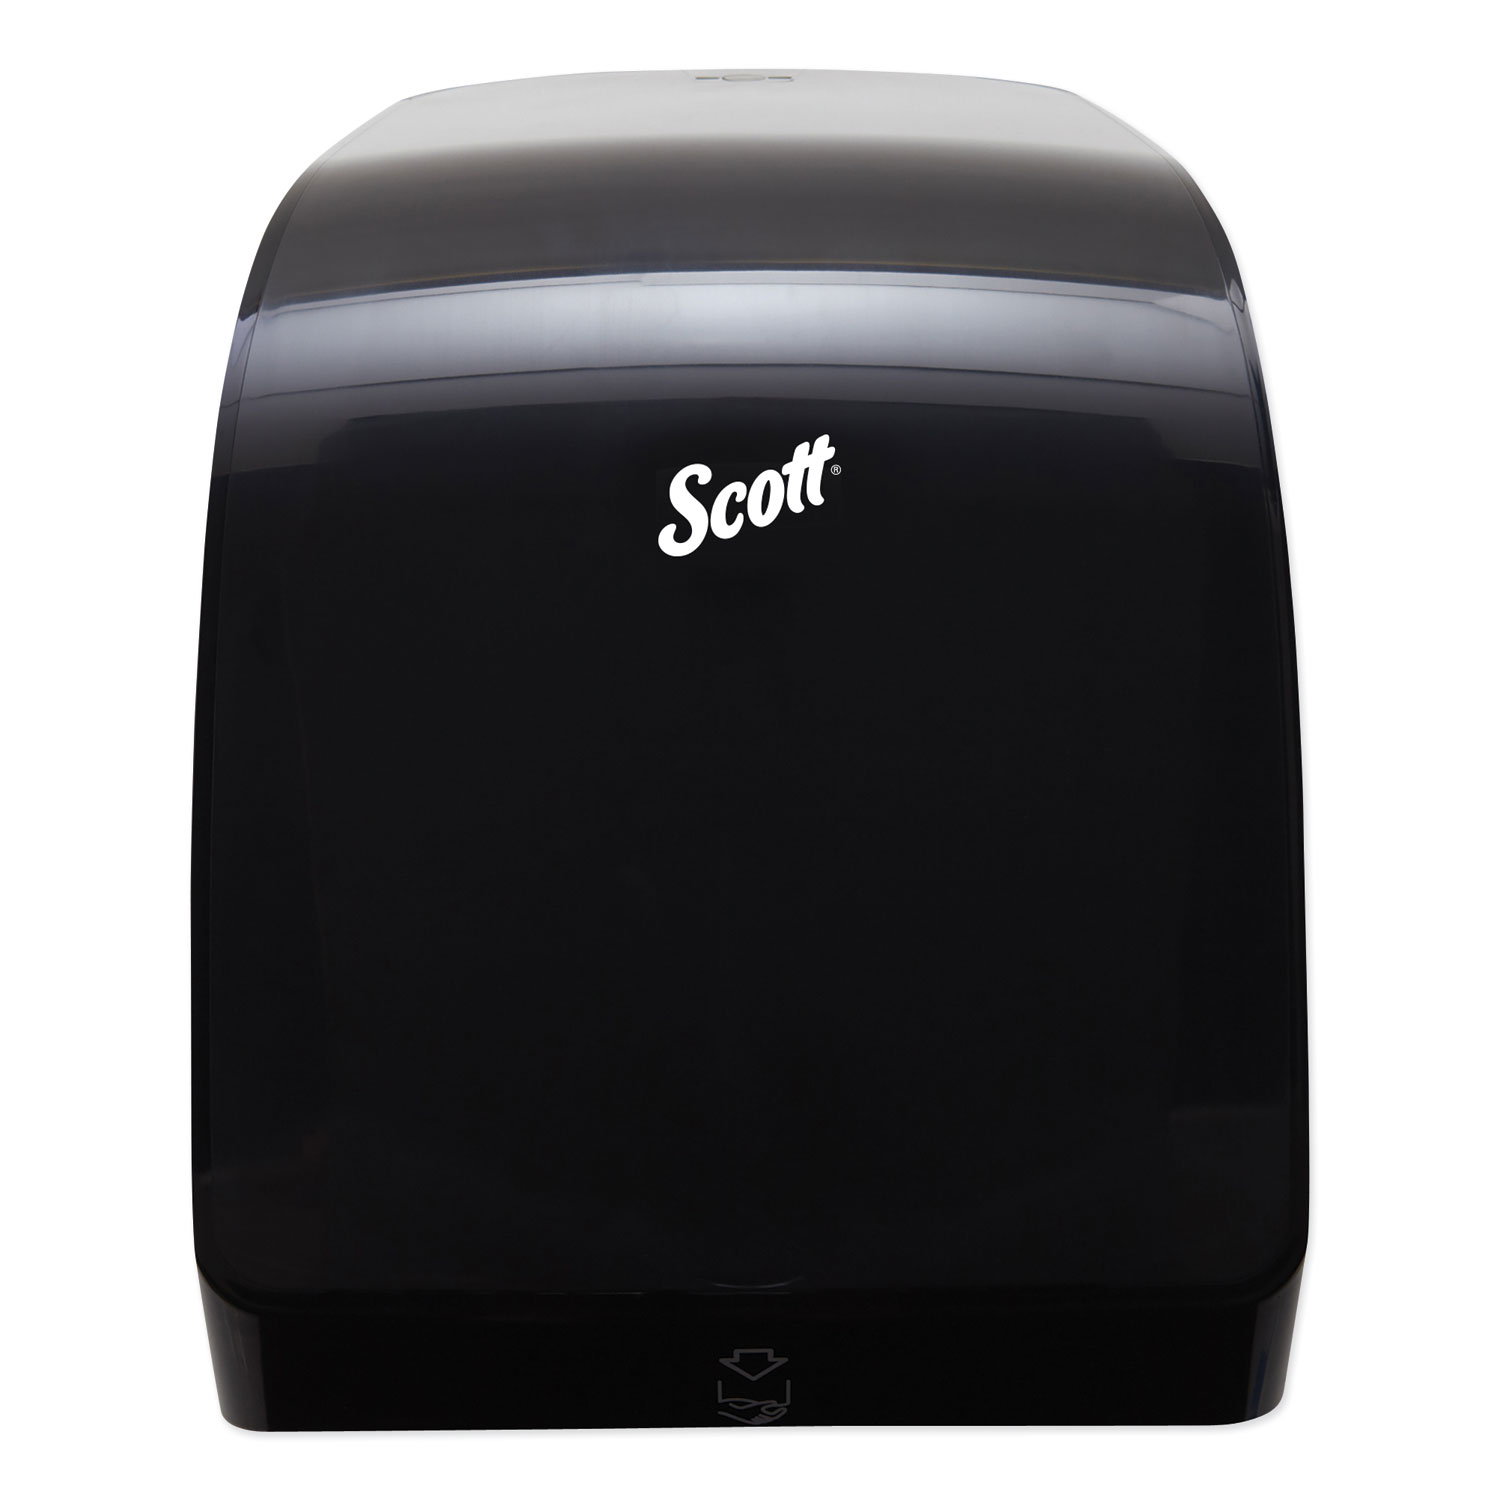  Scott KCC 34346 Pro Mod Manual Hard Roll Towel Dispenser, 12.66 x 9.18 x 16.44, Smoke (KCC34346) 